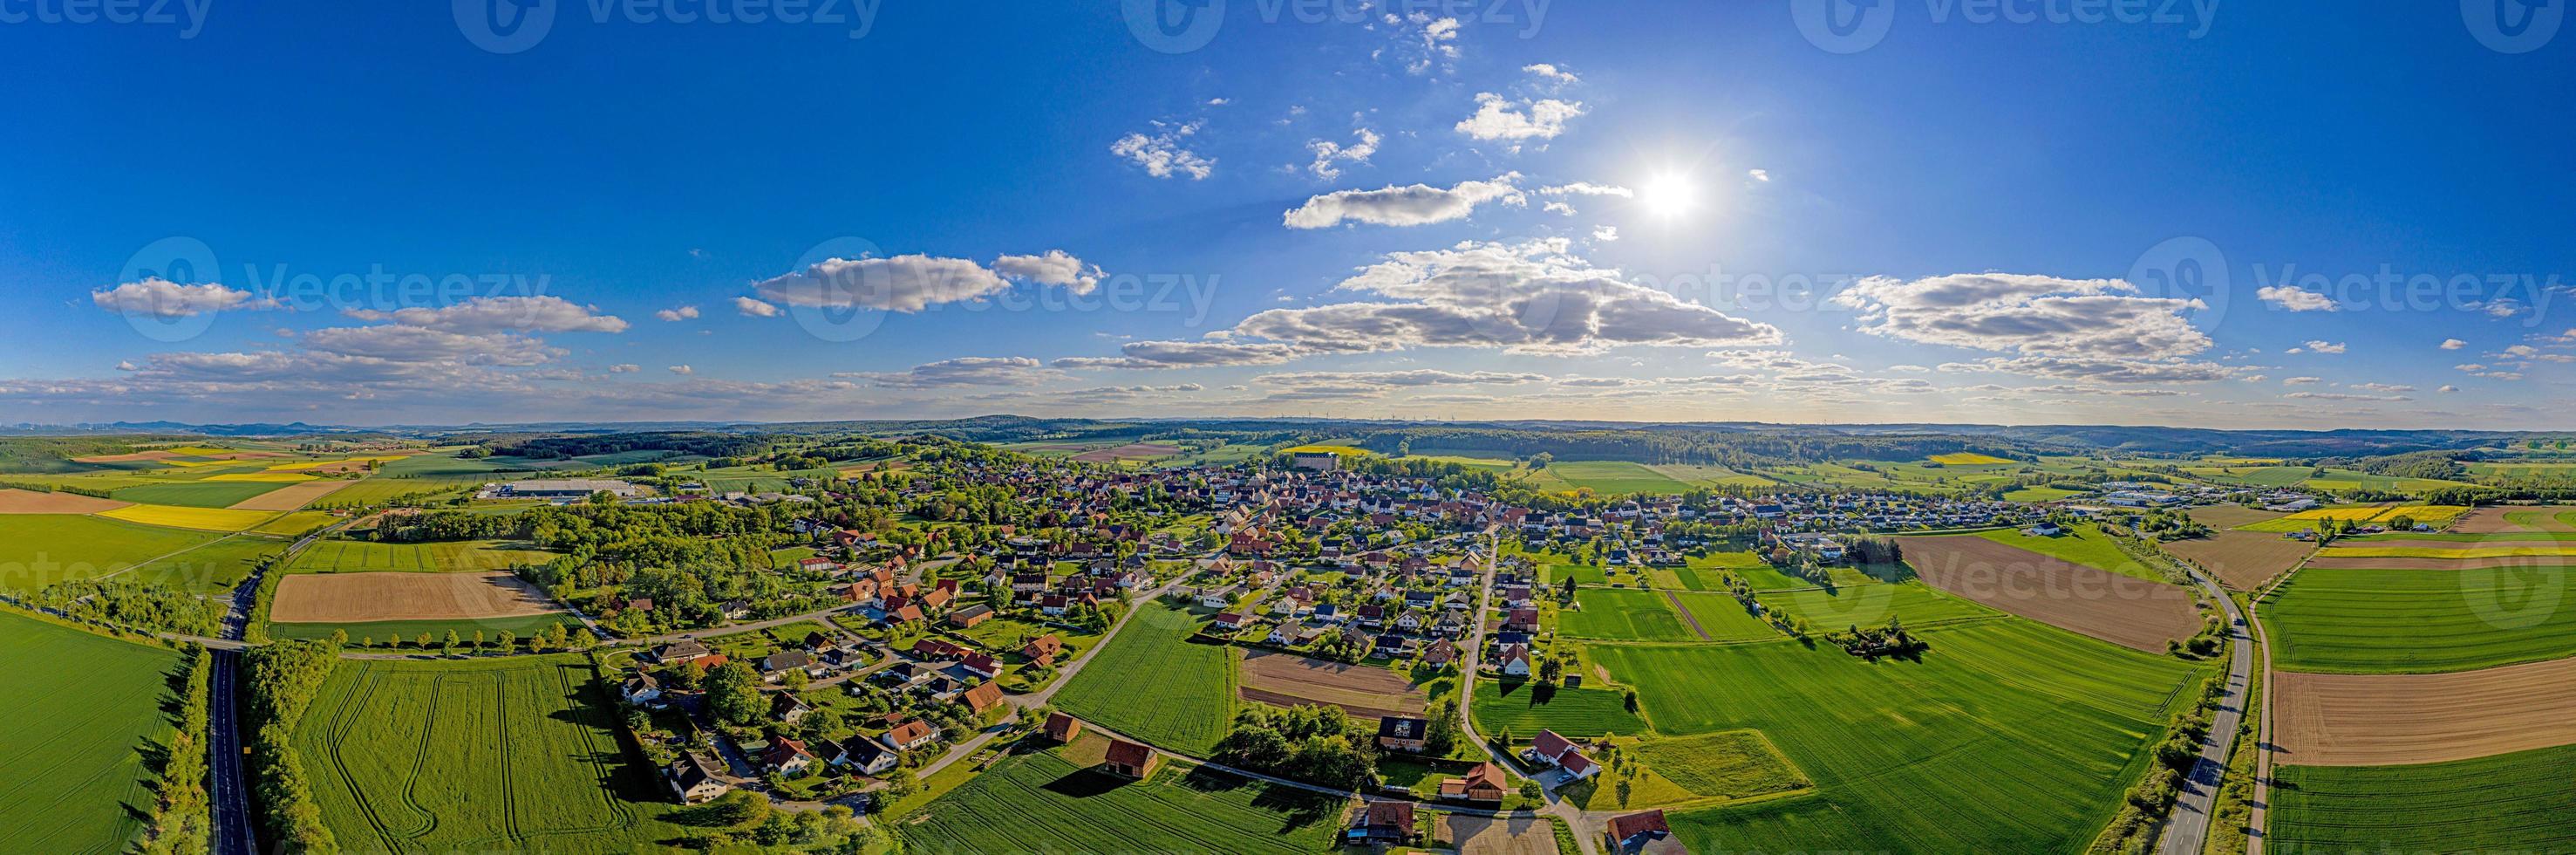 imagem panorâmica drone da cidade diemelstadt no norte de hesse na alemanha durante o dia foto